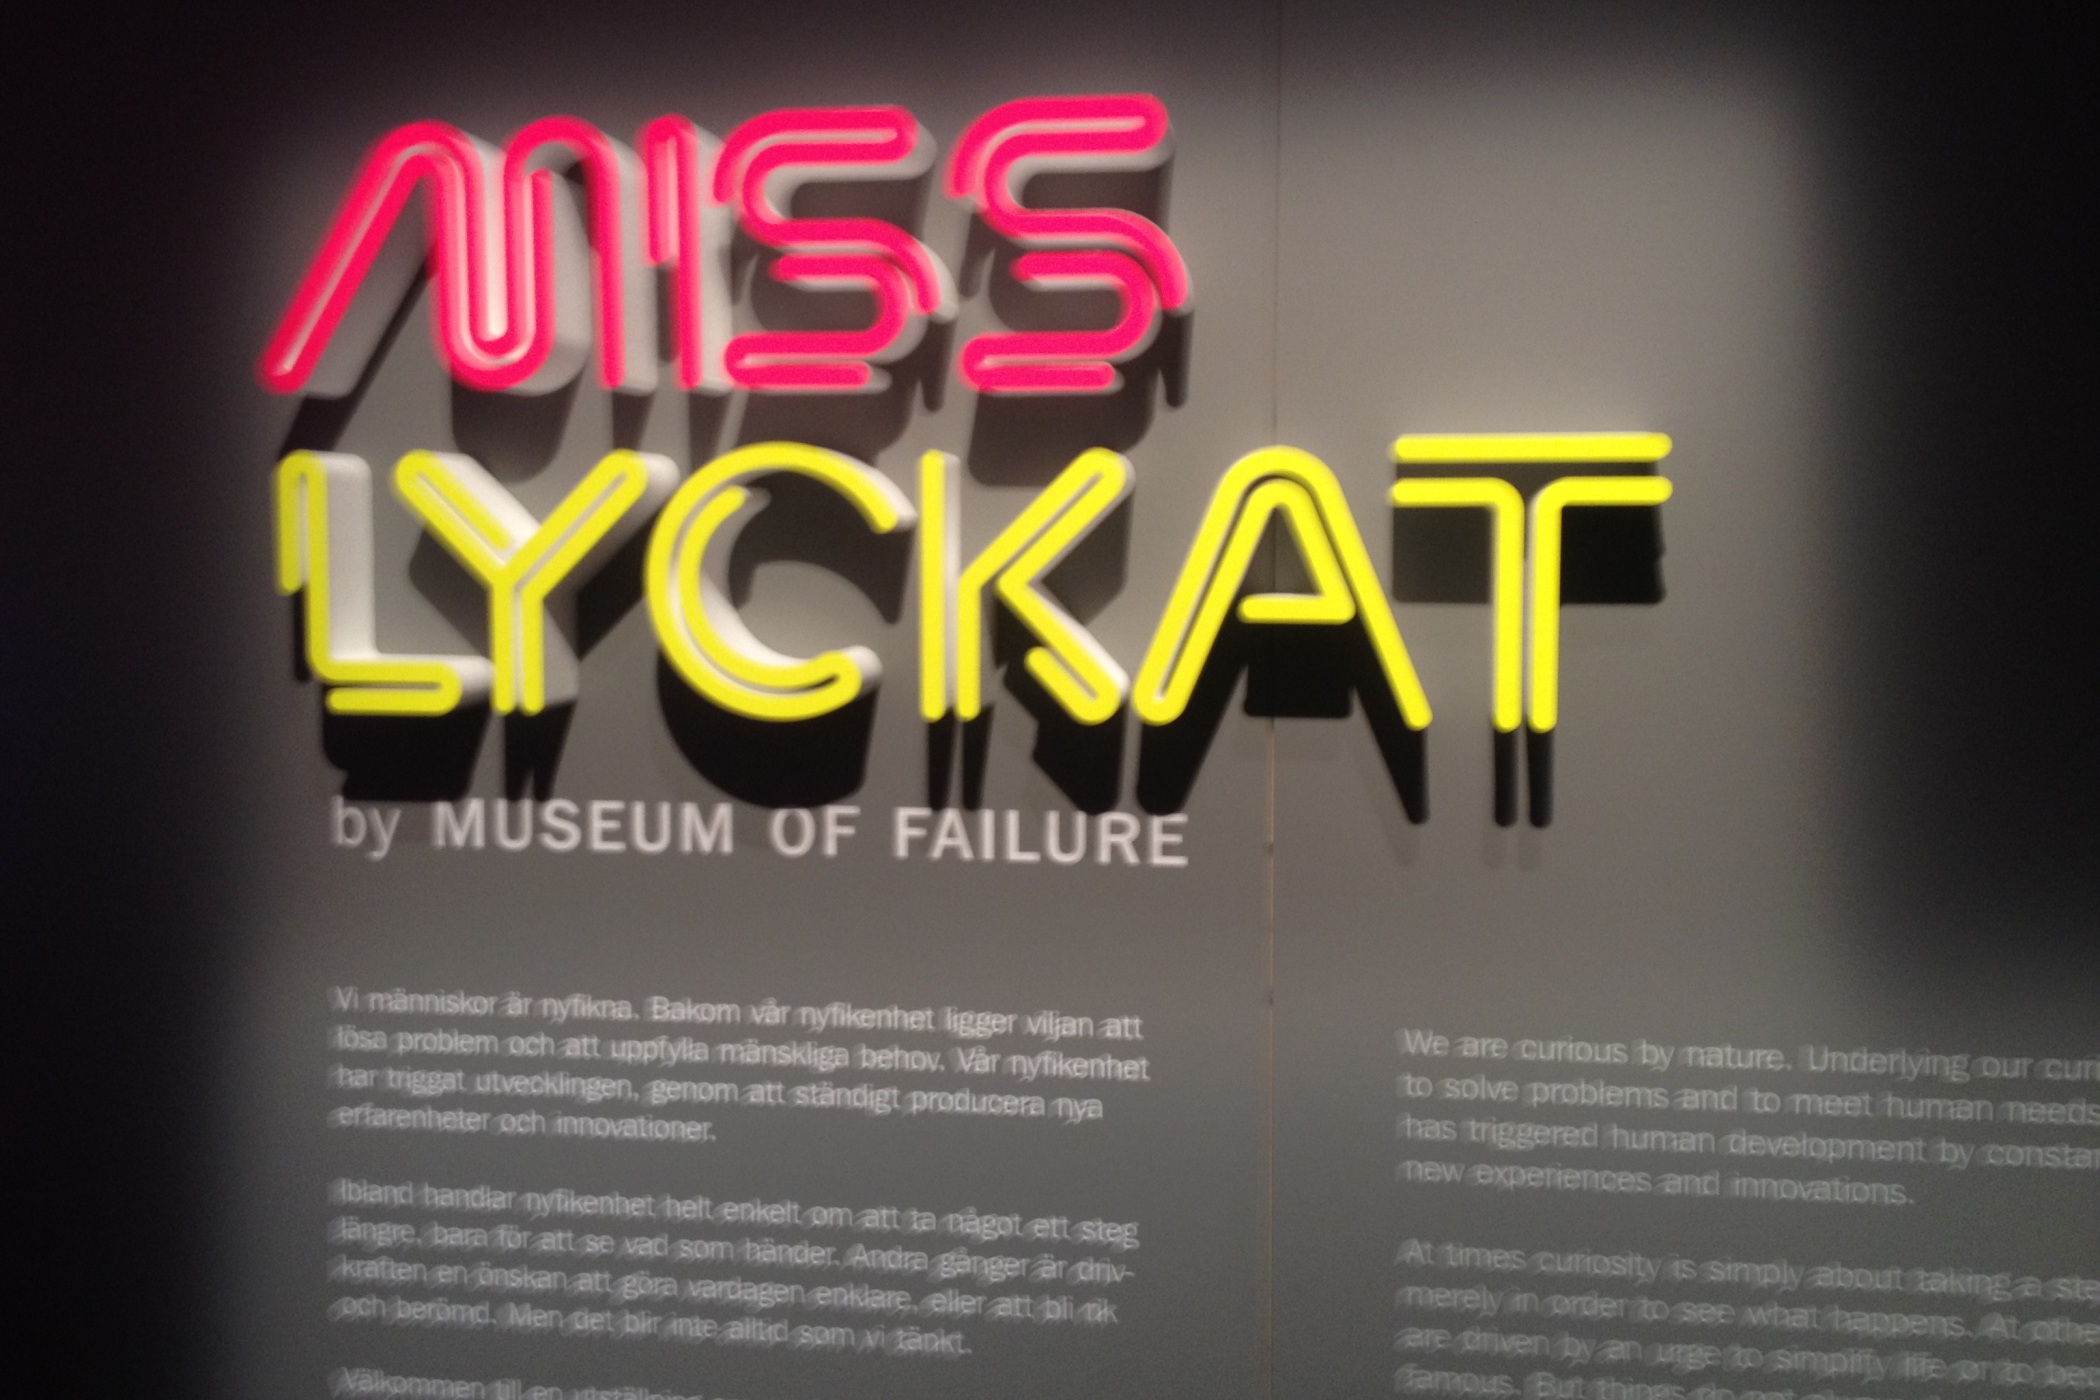 Název výstavy Misslyckat znamená v překladu Neúspěšní